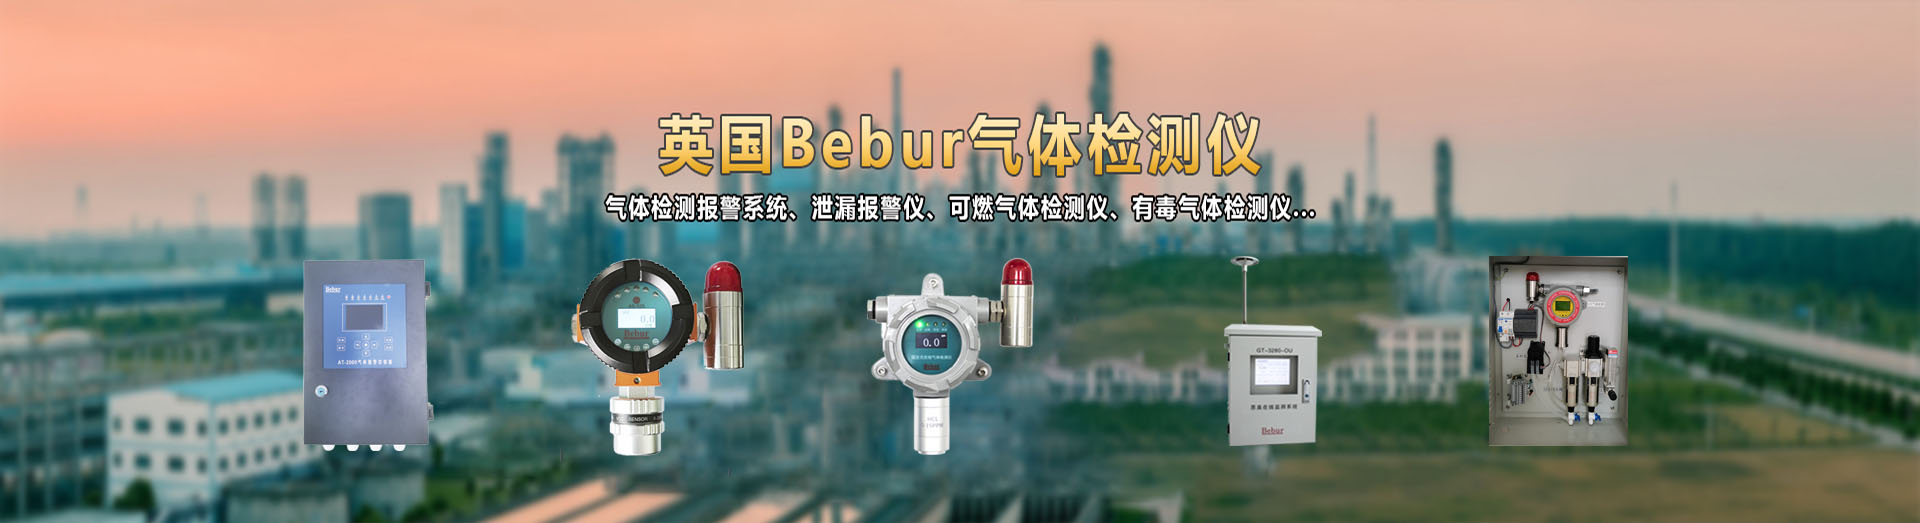 英国Bebur品牌进口甲醛气体检测仪系列产品